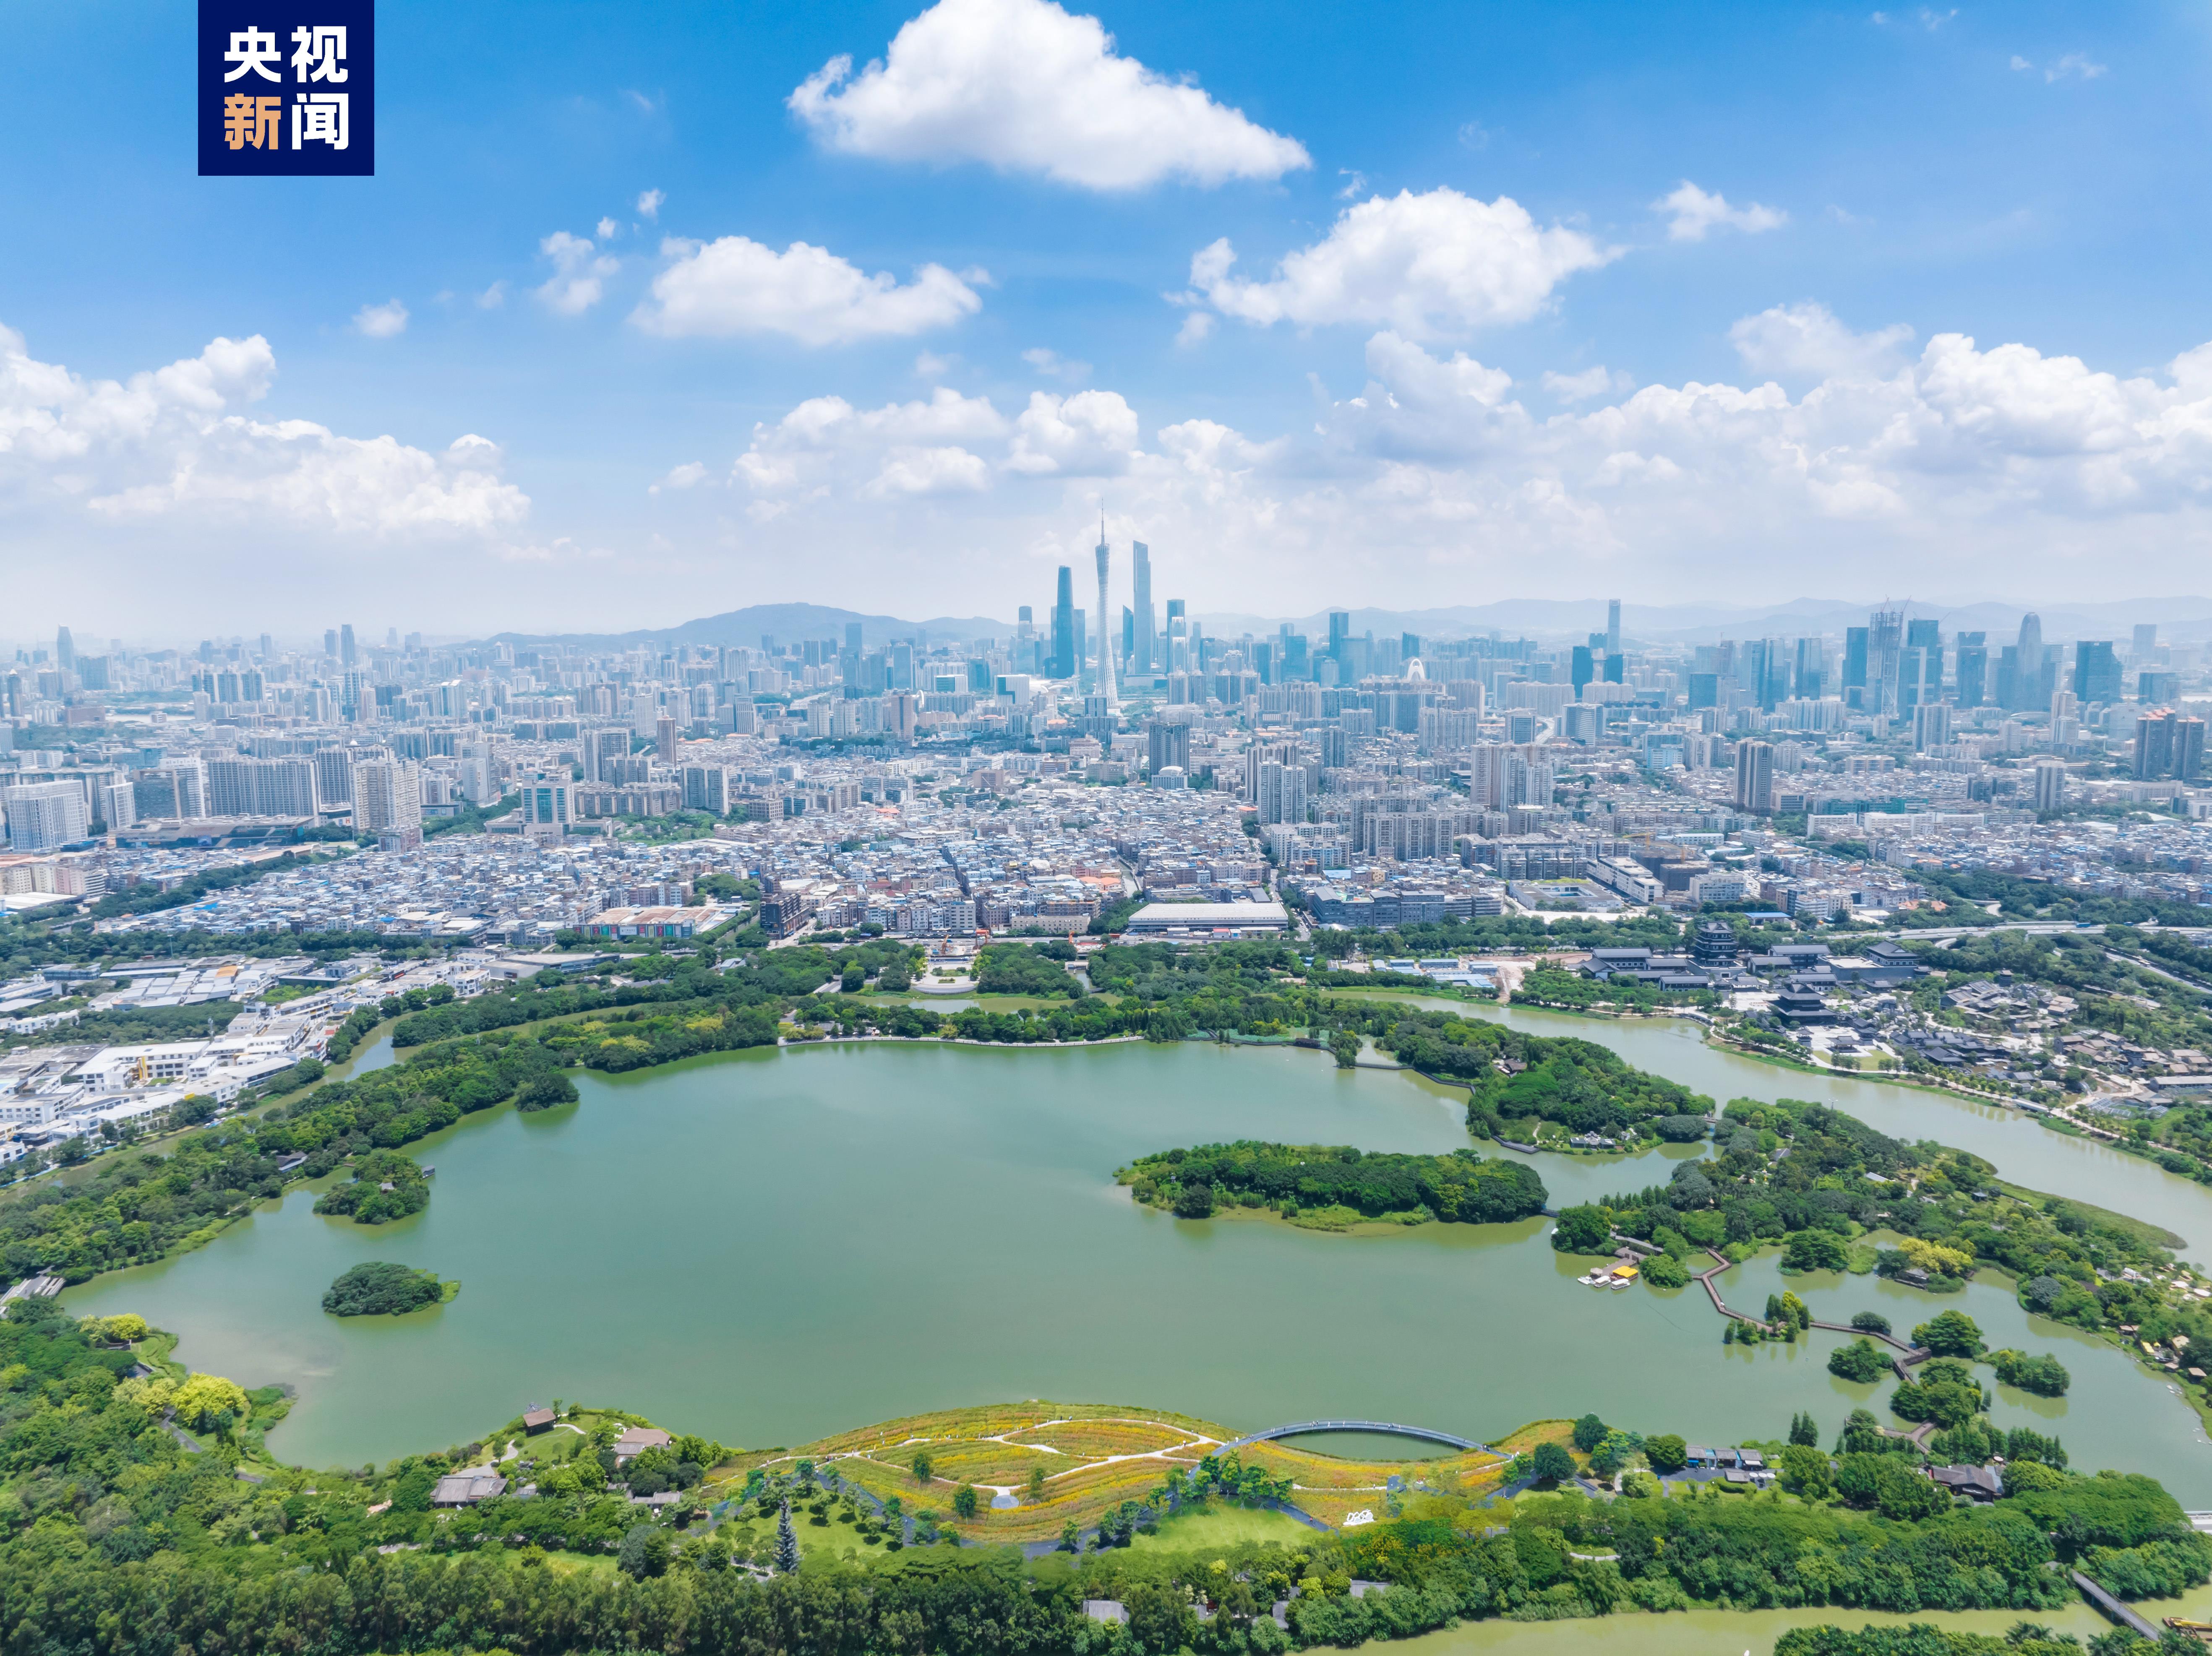 广州海珠国家湿地公园成功列入国际重要湿地名录